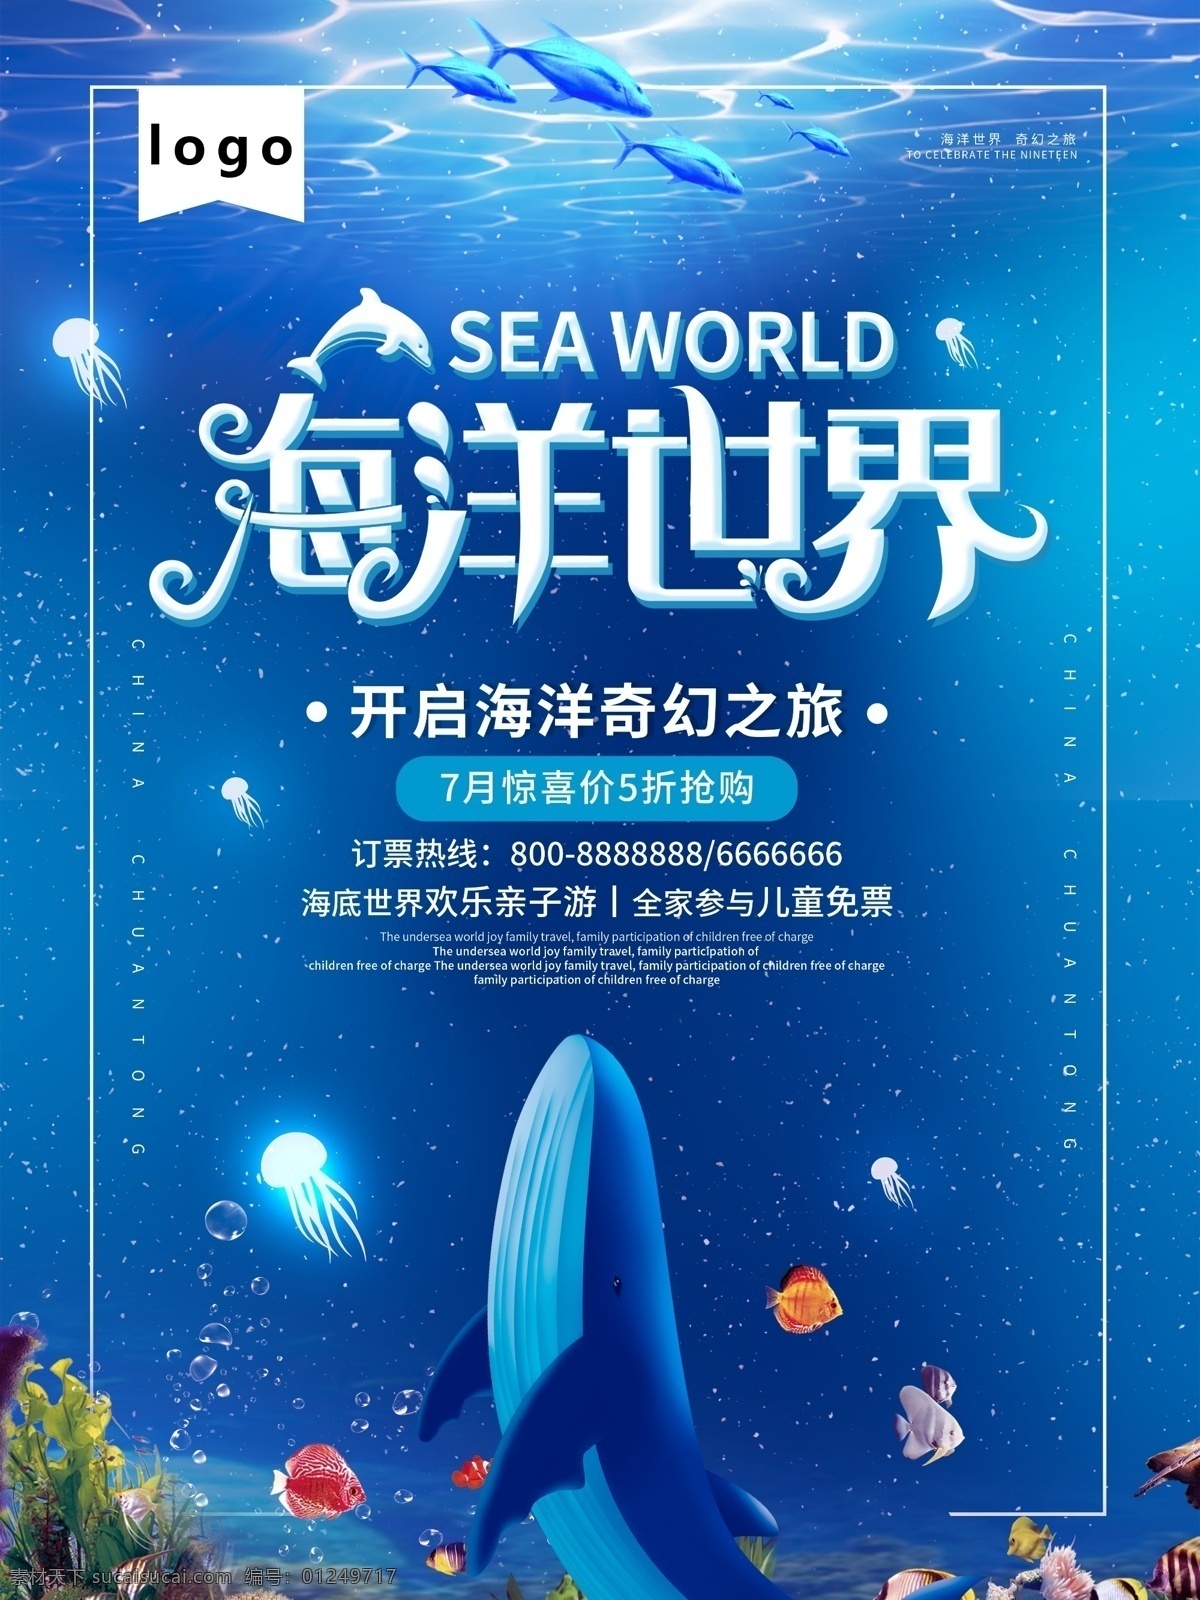 海洋世界海报 海洋 世界 海报 蓝色 海底动物